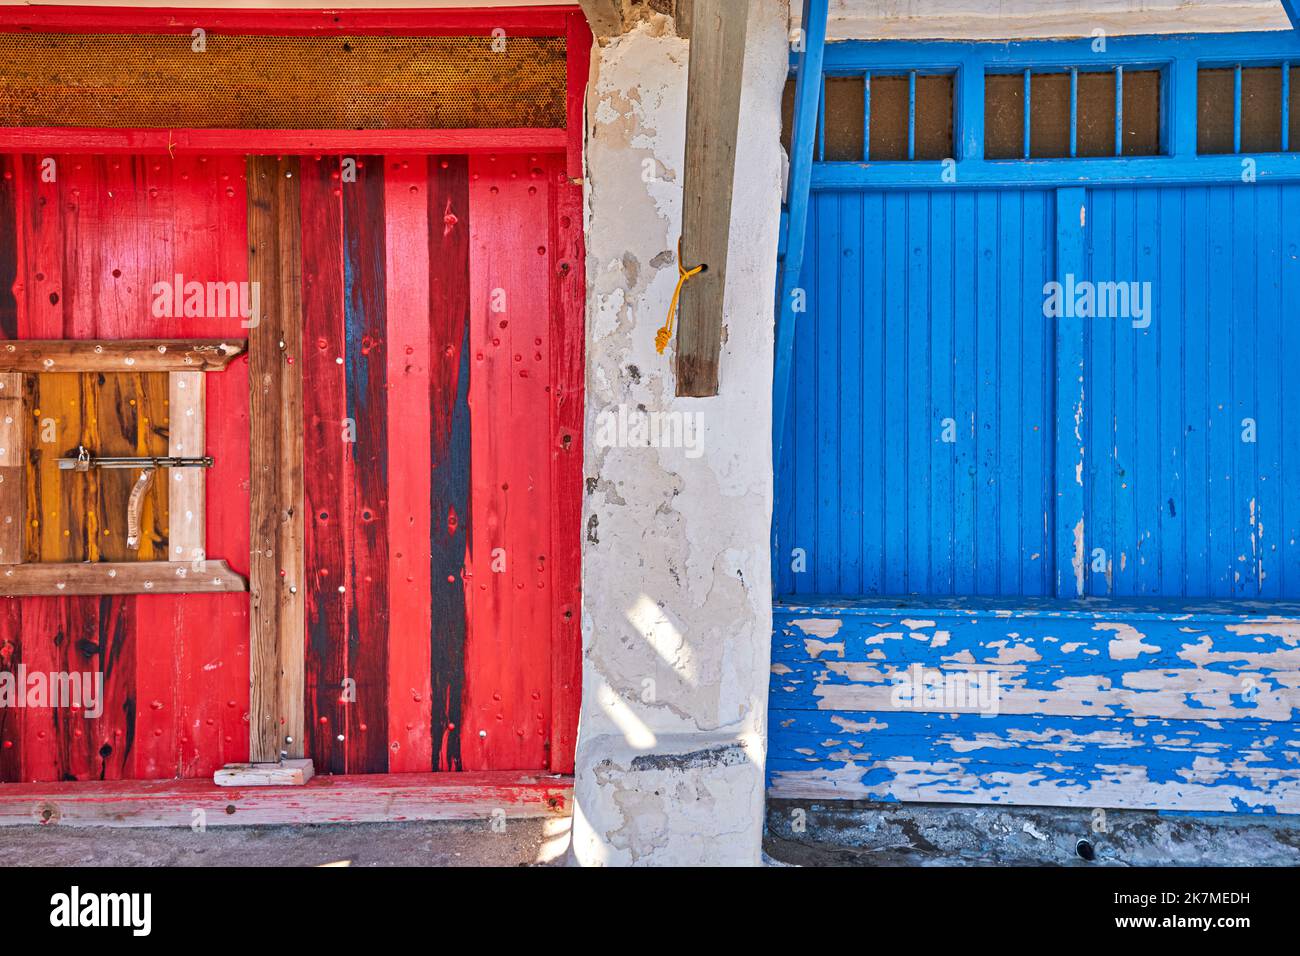 Farbenfrohe blaue, rote Garagentore für Boote, Klima Fischerdorf, Griechenland. Bemalte und verwitterte Holztüren, weiß getünchte Wände. Stockfoto